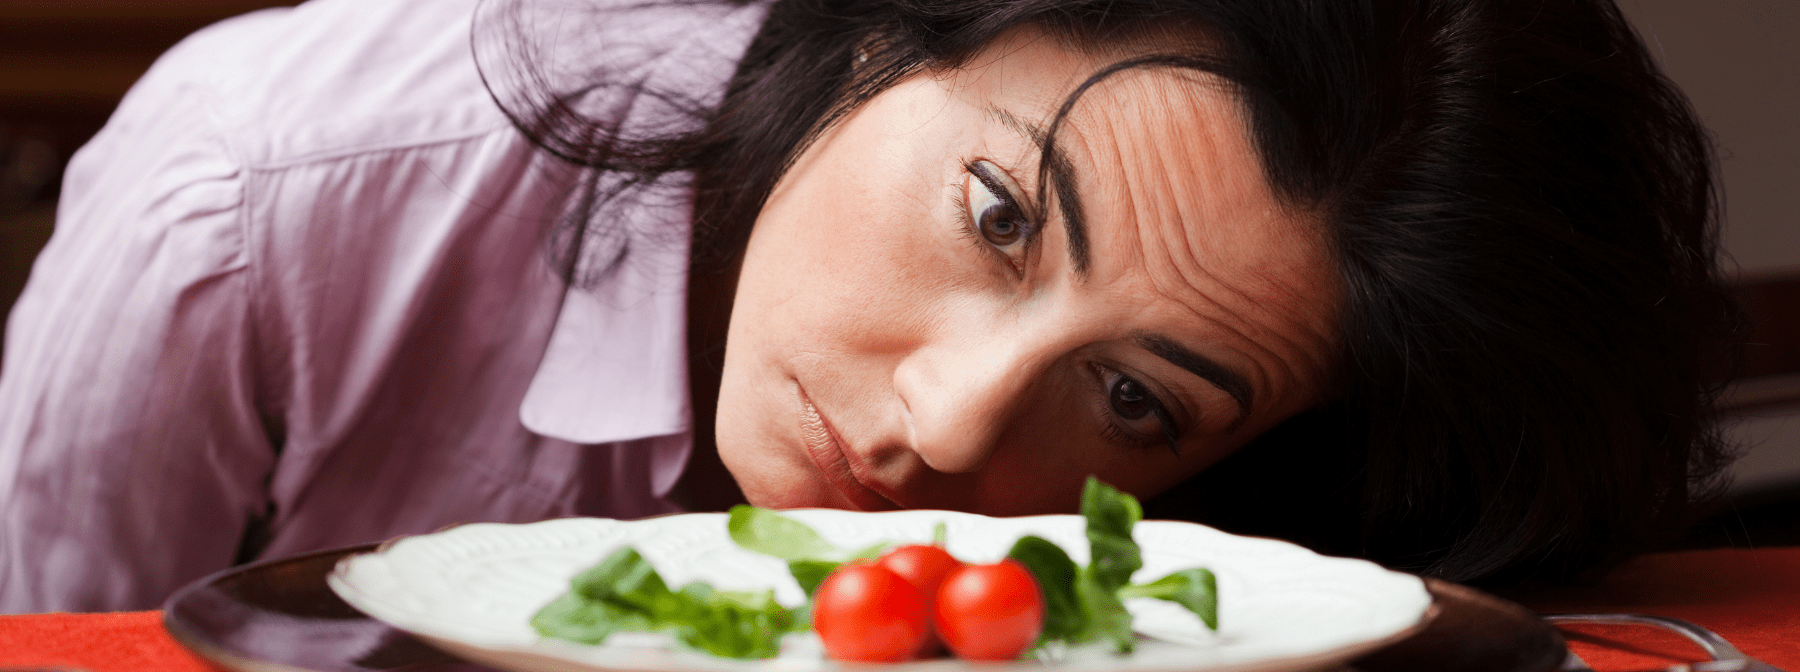 6 idées reçues de la nutrition avec kevlaar_diet